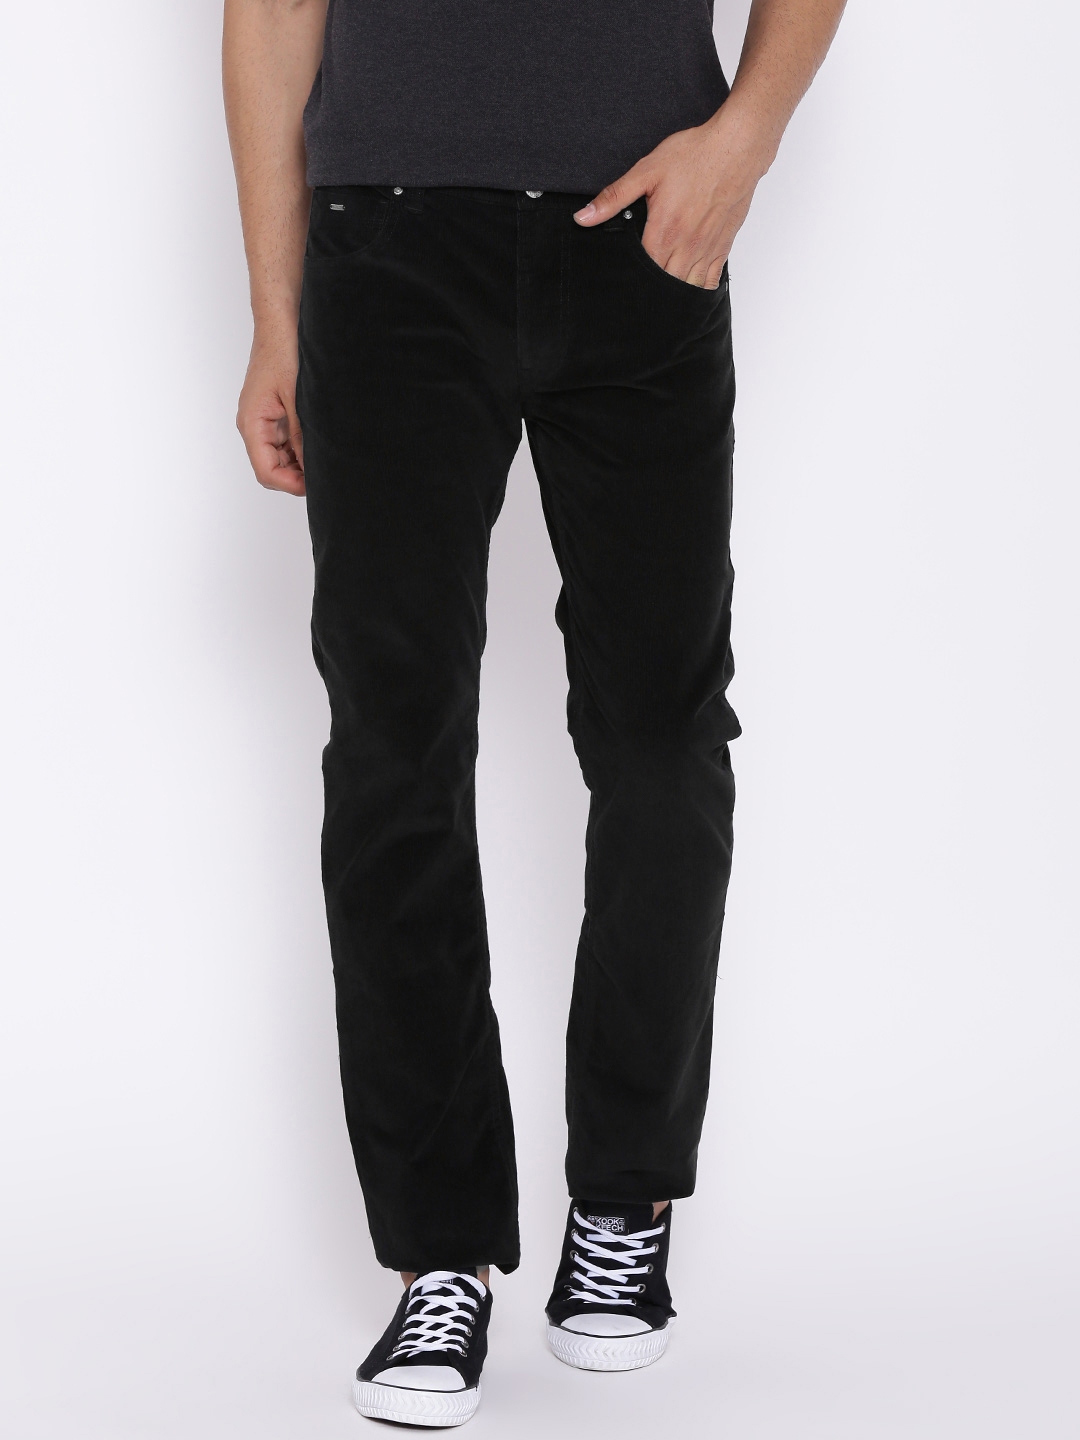 LeeMount Cotton Mens Black Plain Trousers Size 2840 Inch